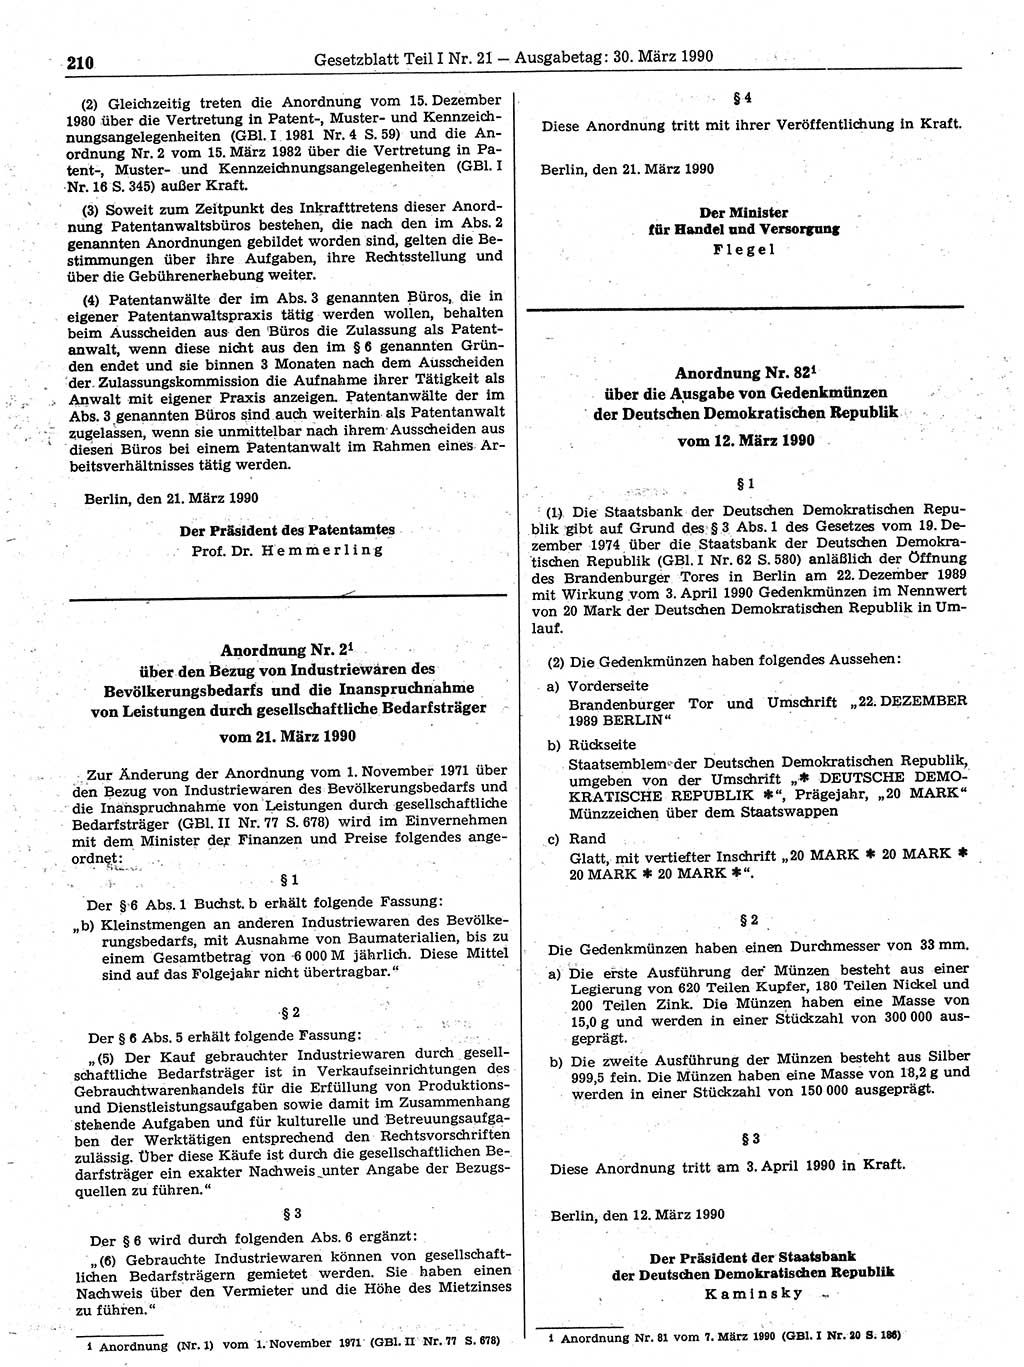 Gesetzblatt (GBl.) der Deutschen Demokratischen Republik (DDR) Teil Ⅰ 1990, Seite 210 (GBl. DDR Ⅰ 1990, S. 210)